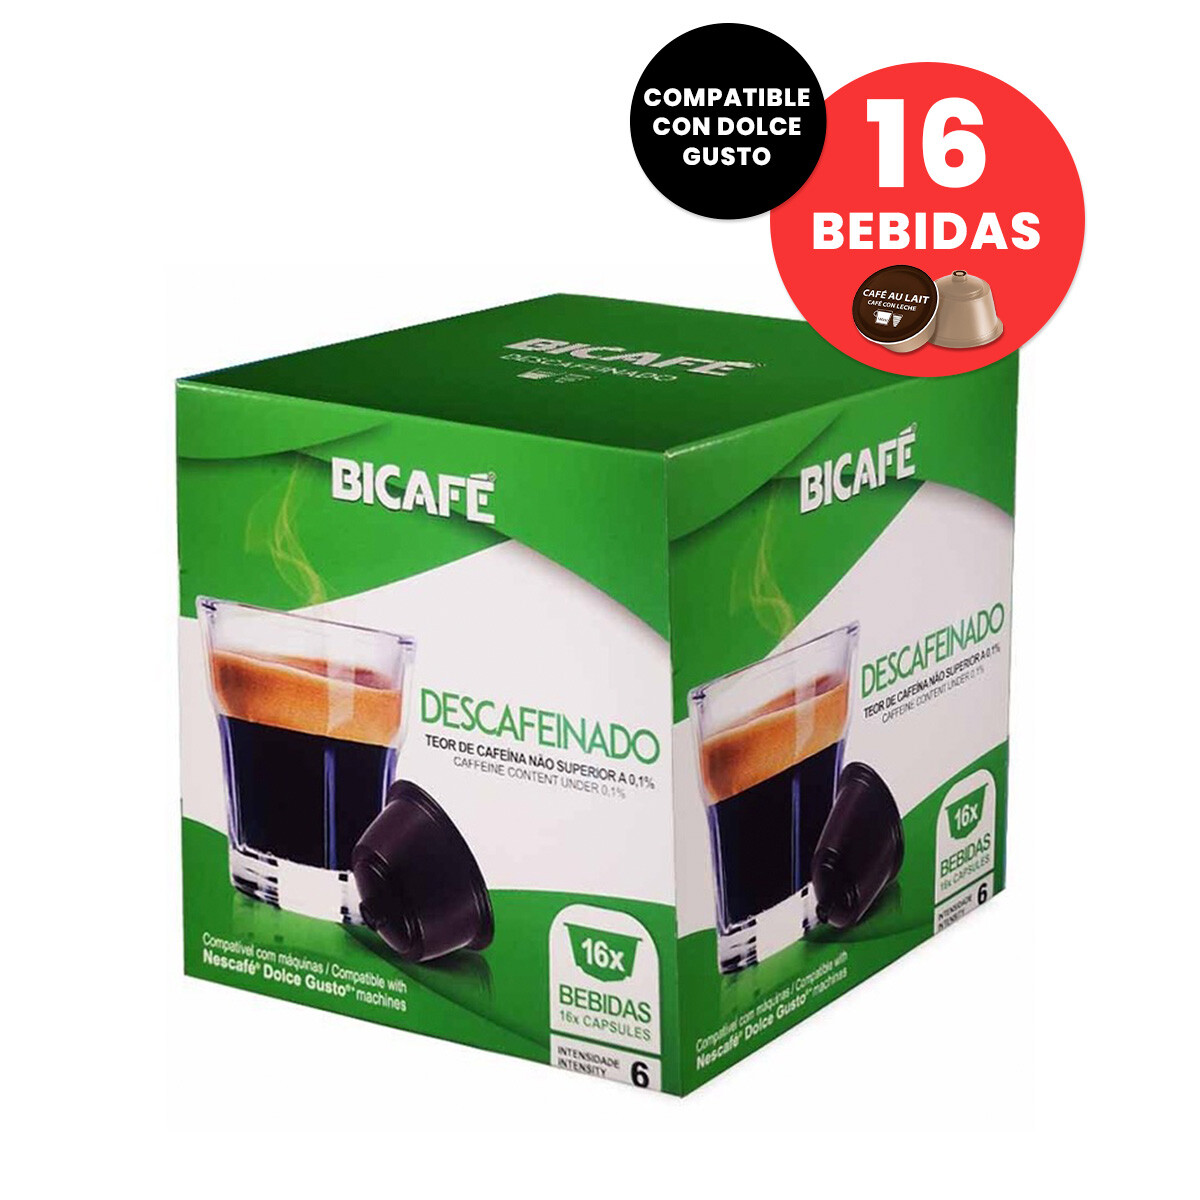 Capsulas Bicafe Descafeinado Compatible Dolce Gusto 16 Bebidas - 001 